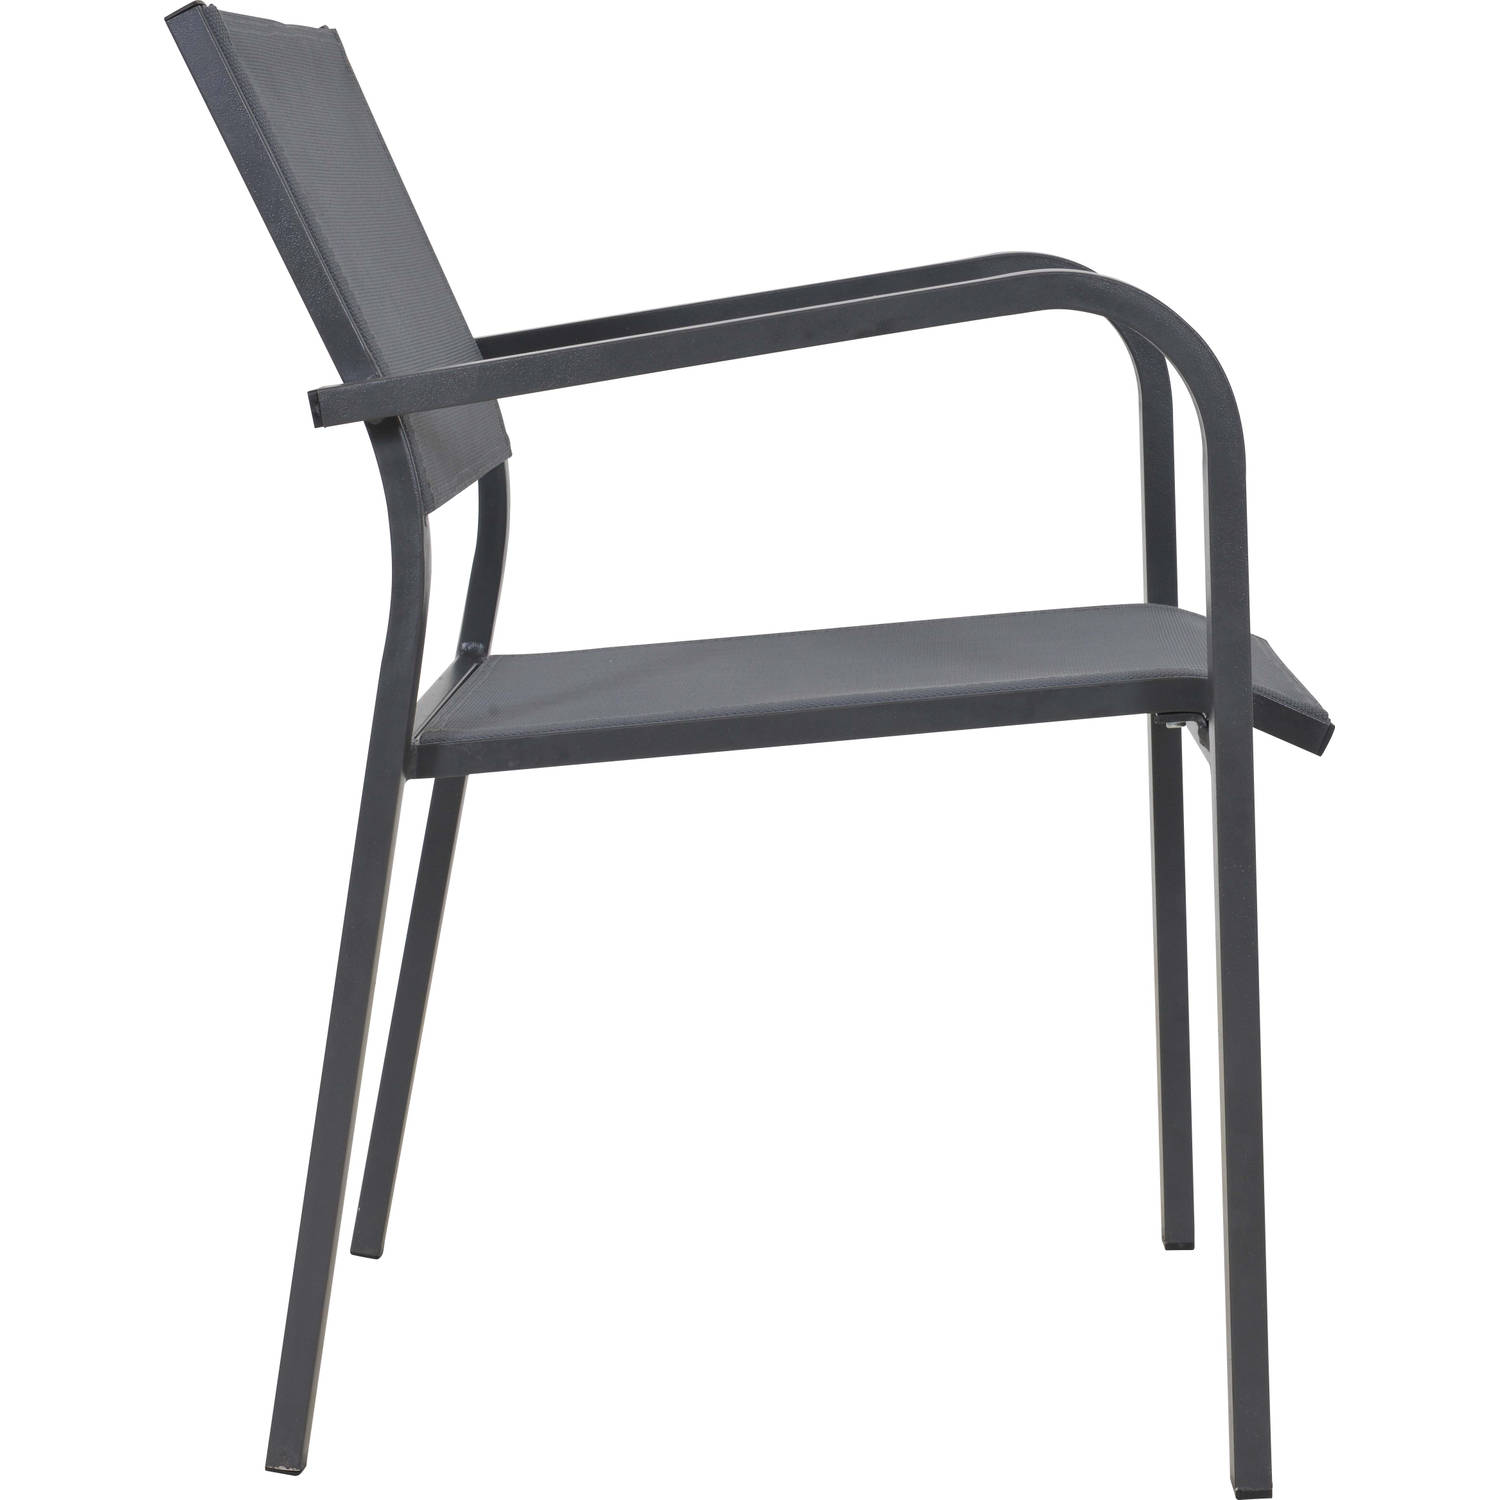 Blokker stapelstoel Berni 58x56x80cm | Blokker